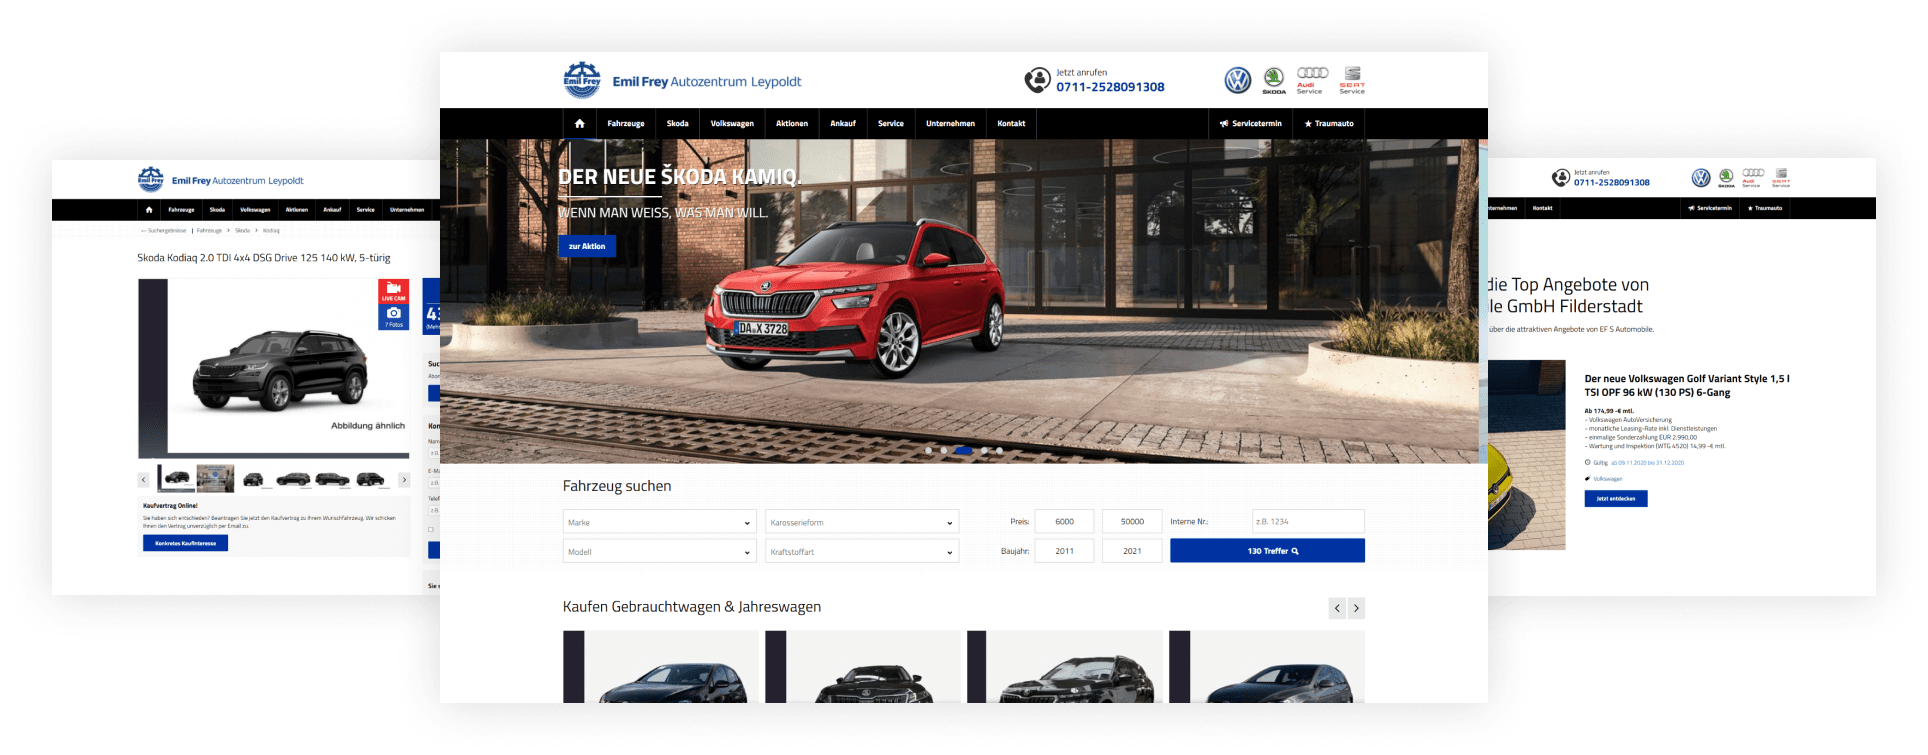 Autozentrum Leypoldt - Vertragspartner für VW und Skoda